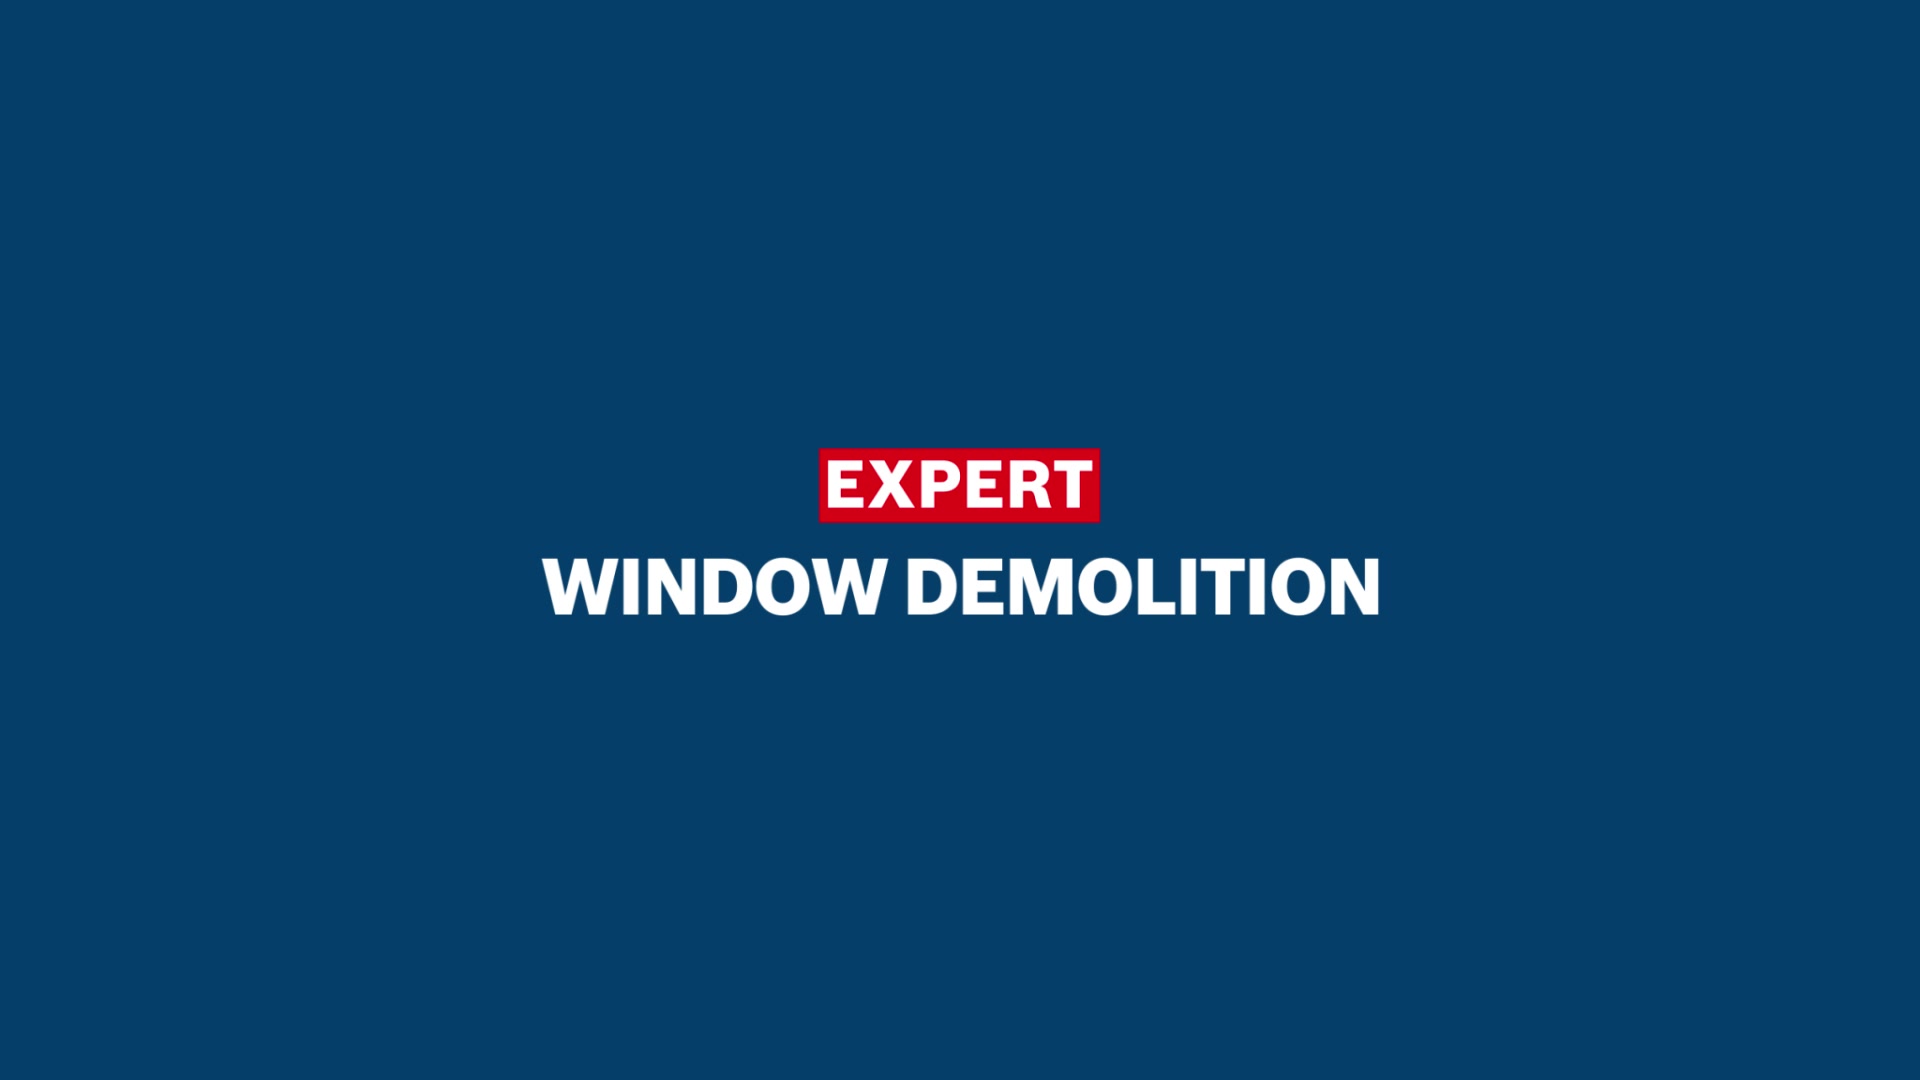 EXPERT 'Window Demolition'